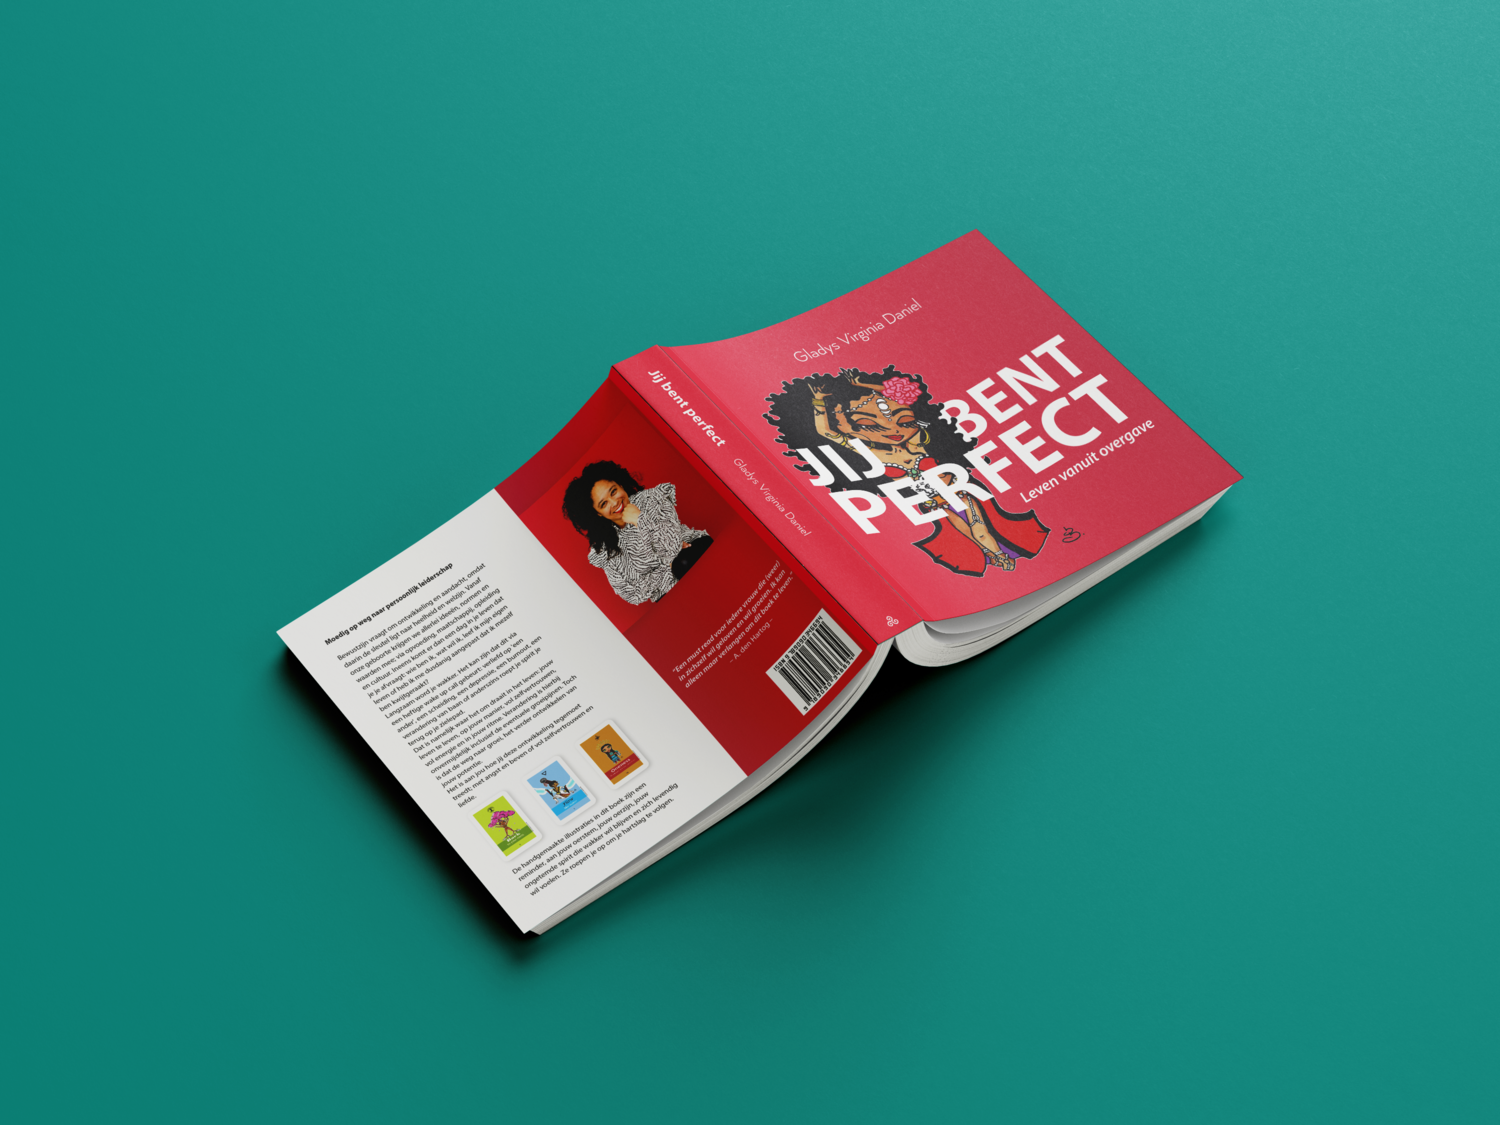 Handboek Orakelkaarten: Jij bent Perfect.
Ook los van de kaarten te gebruiken voor je persoonlijke ontwikkeling.